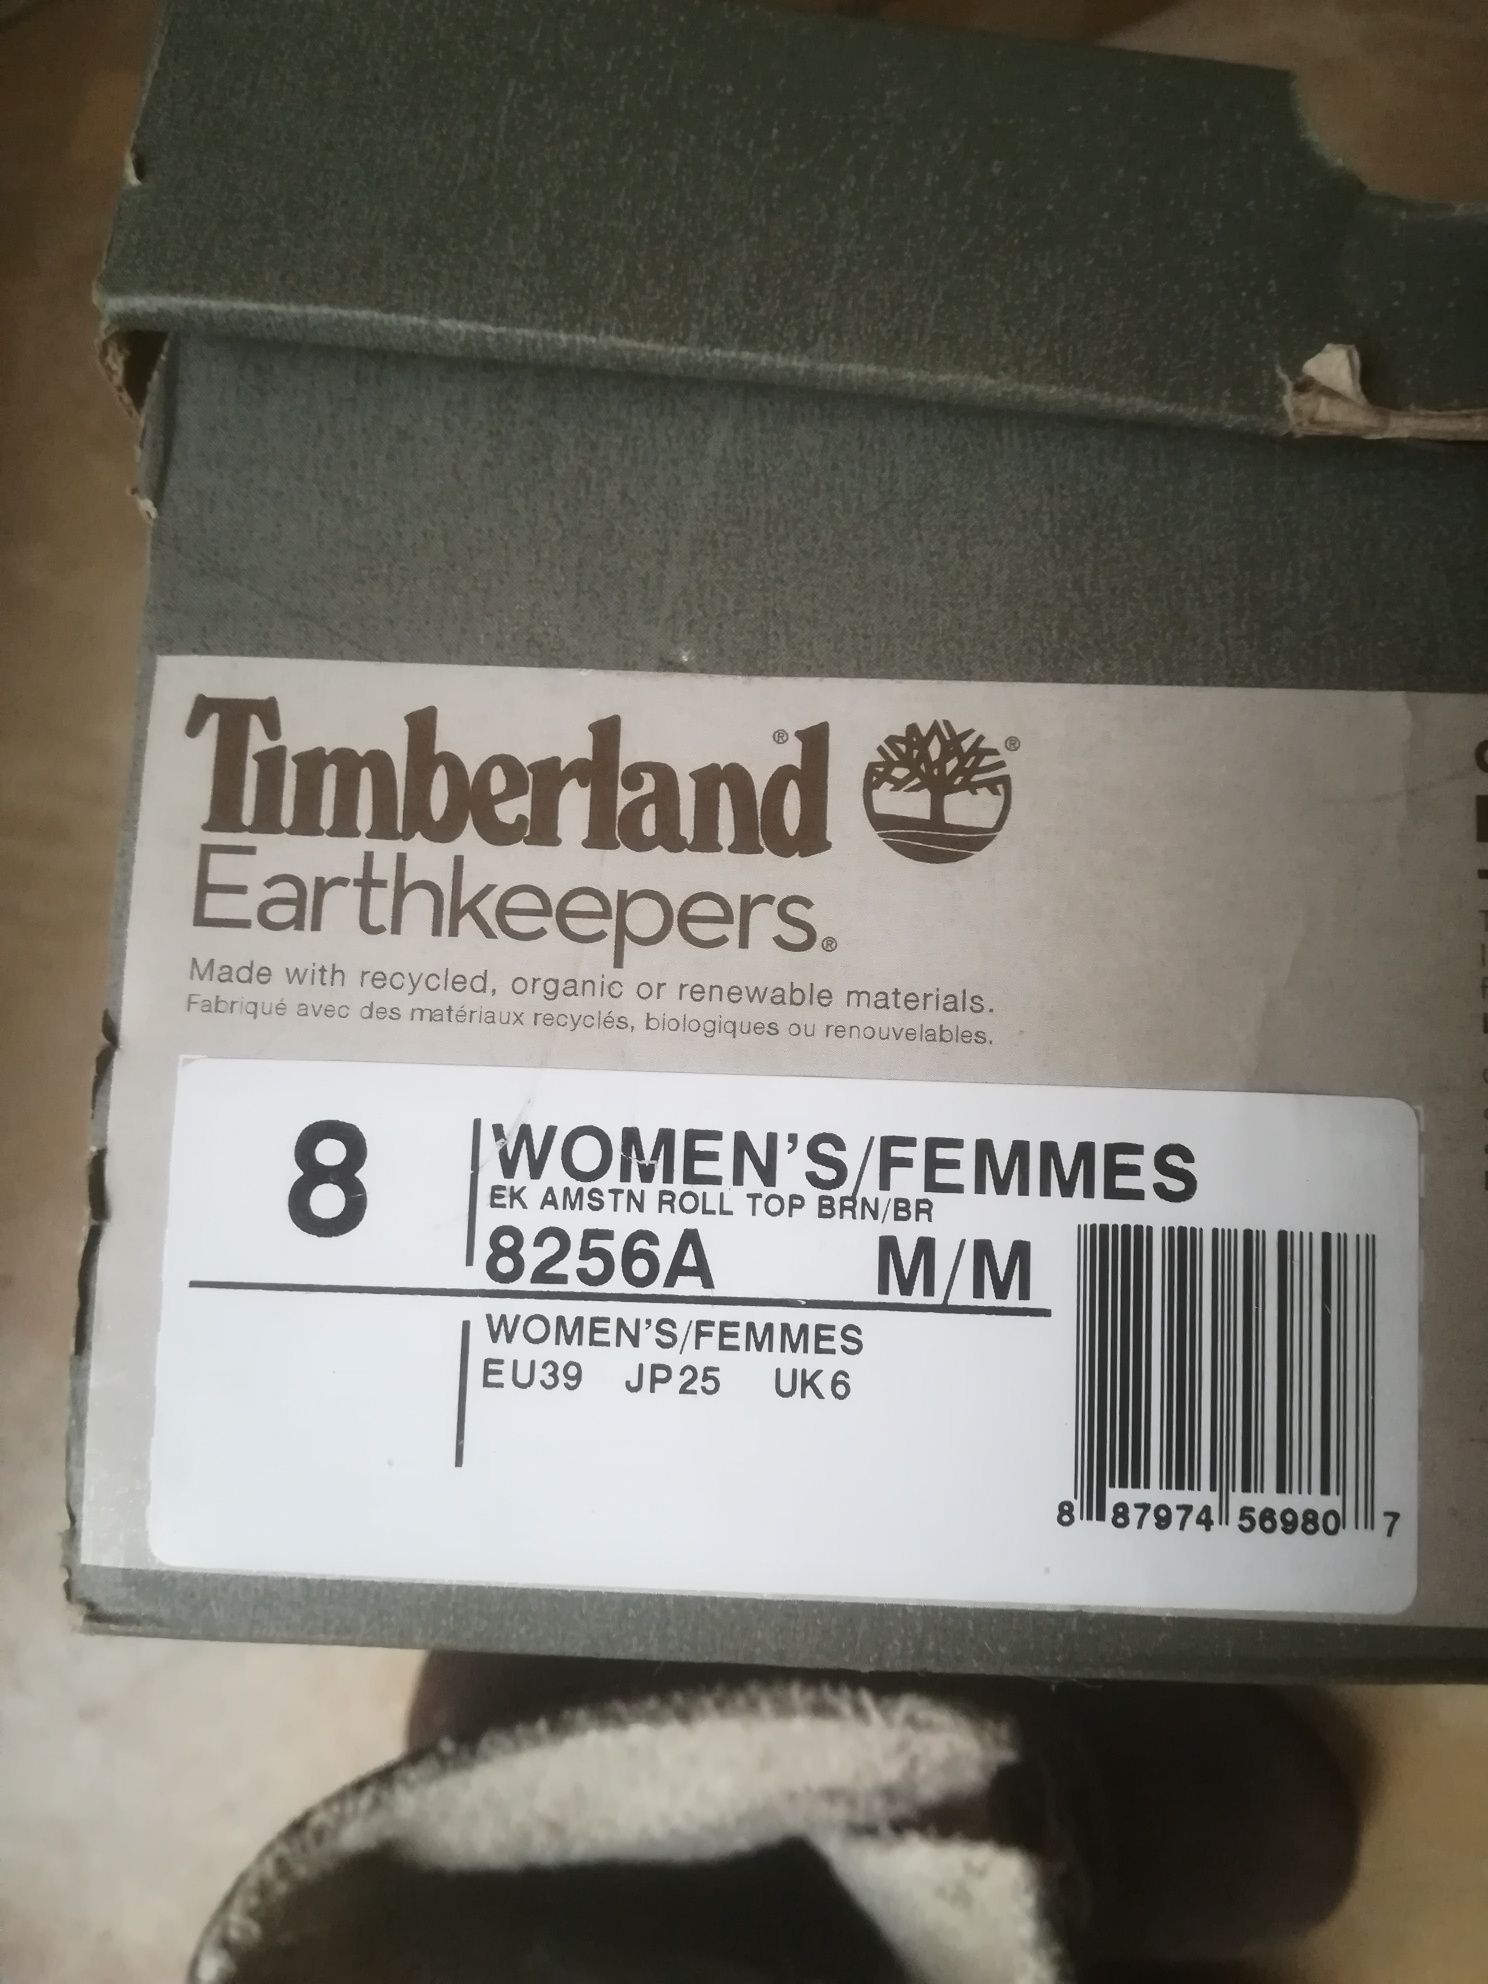 Дамски обувки Timberland. 39 номер. Боти. Като нови! Оригинални.